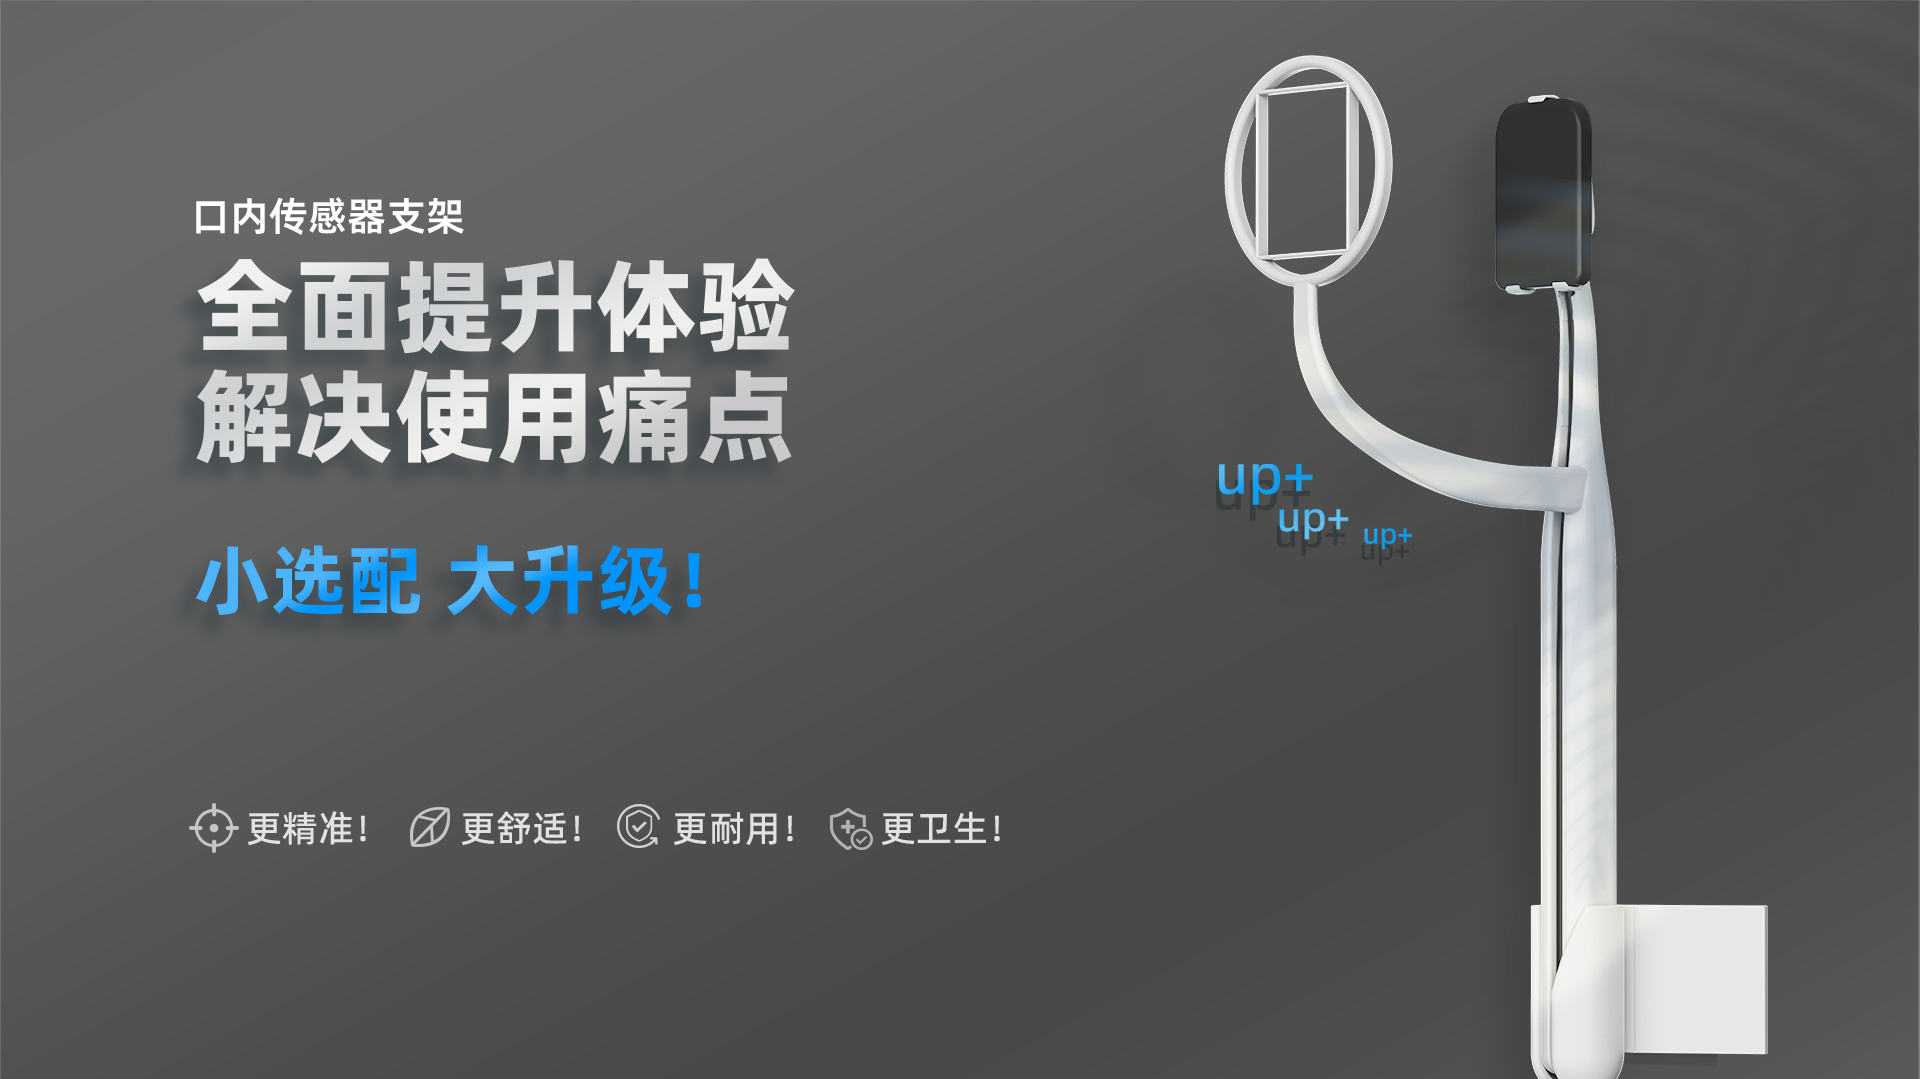 口内传感器支架产品介绍---网站中文_01.jpg